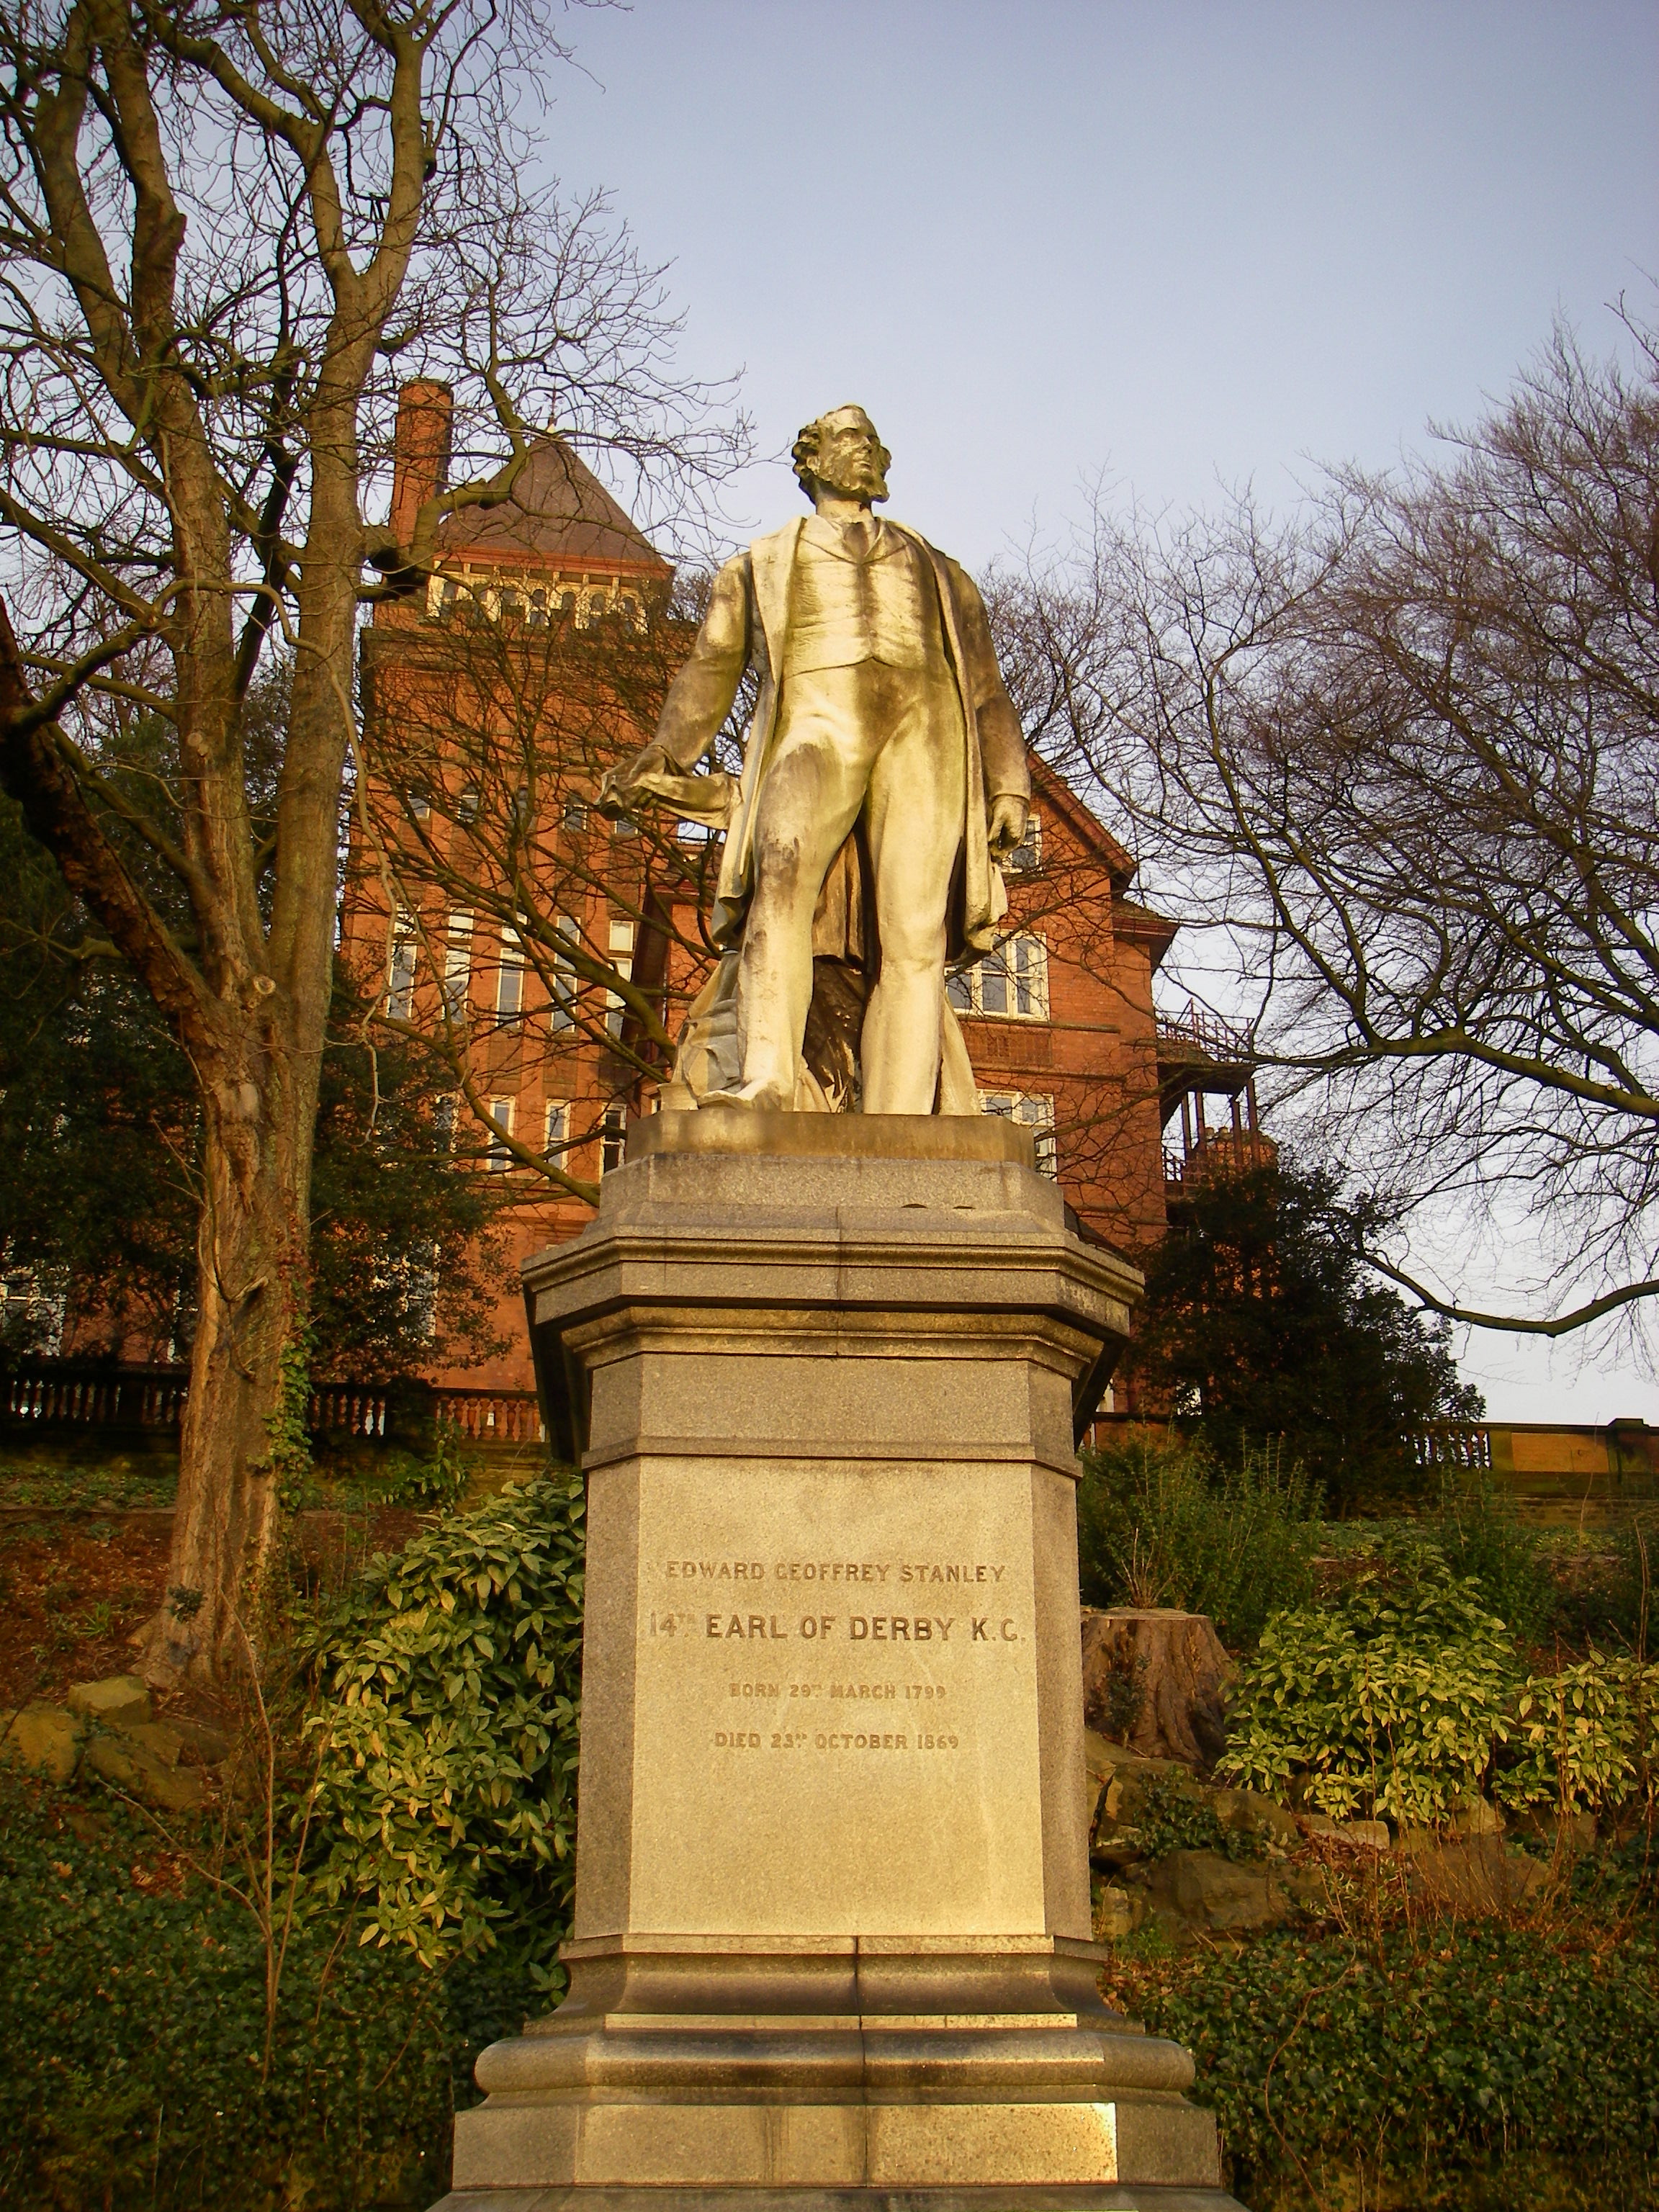 Statue of Edward Geoffrey Stanley: The Earl of Derby 1799-1869